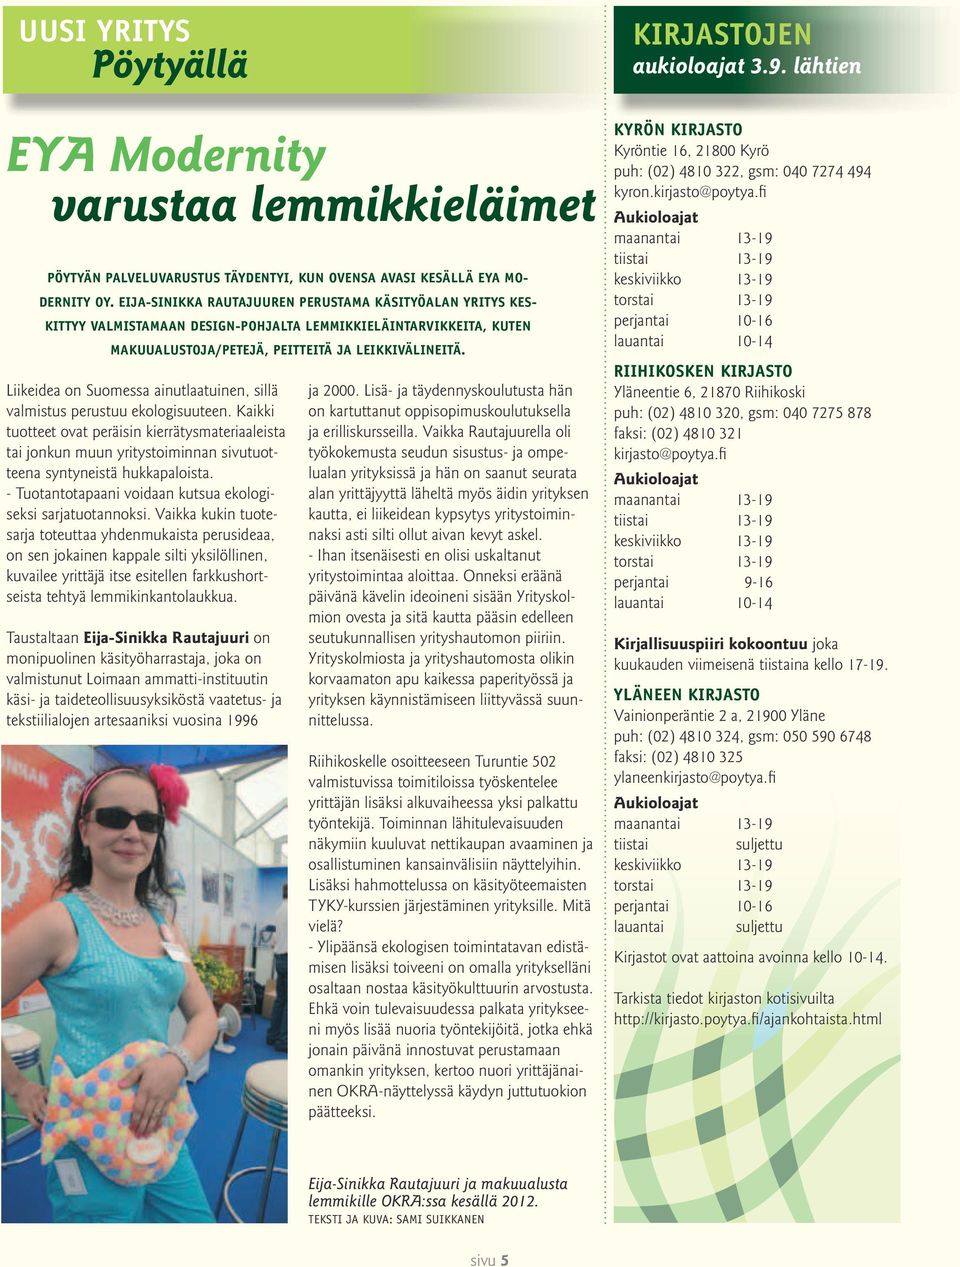 Liikeidea on Suomessa ainutlaatuinen, sillä valmistus perustuu ekologisuuteen.